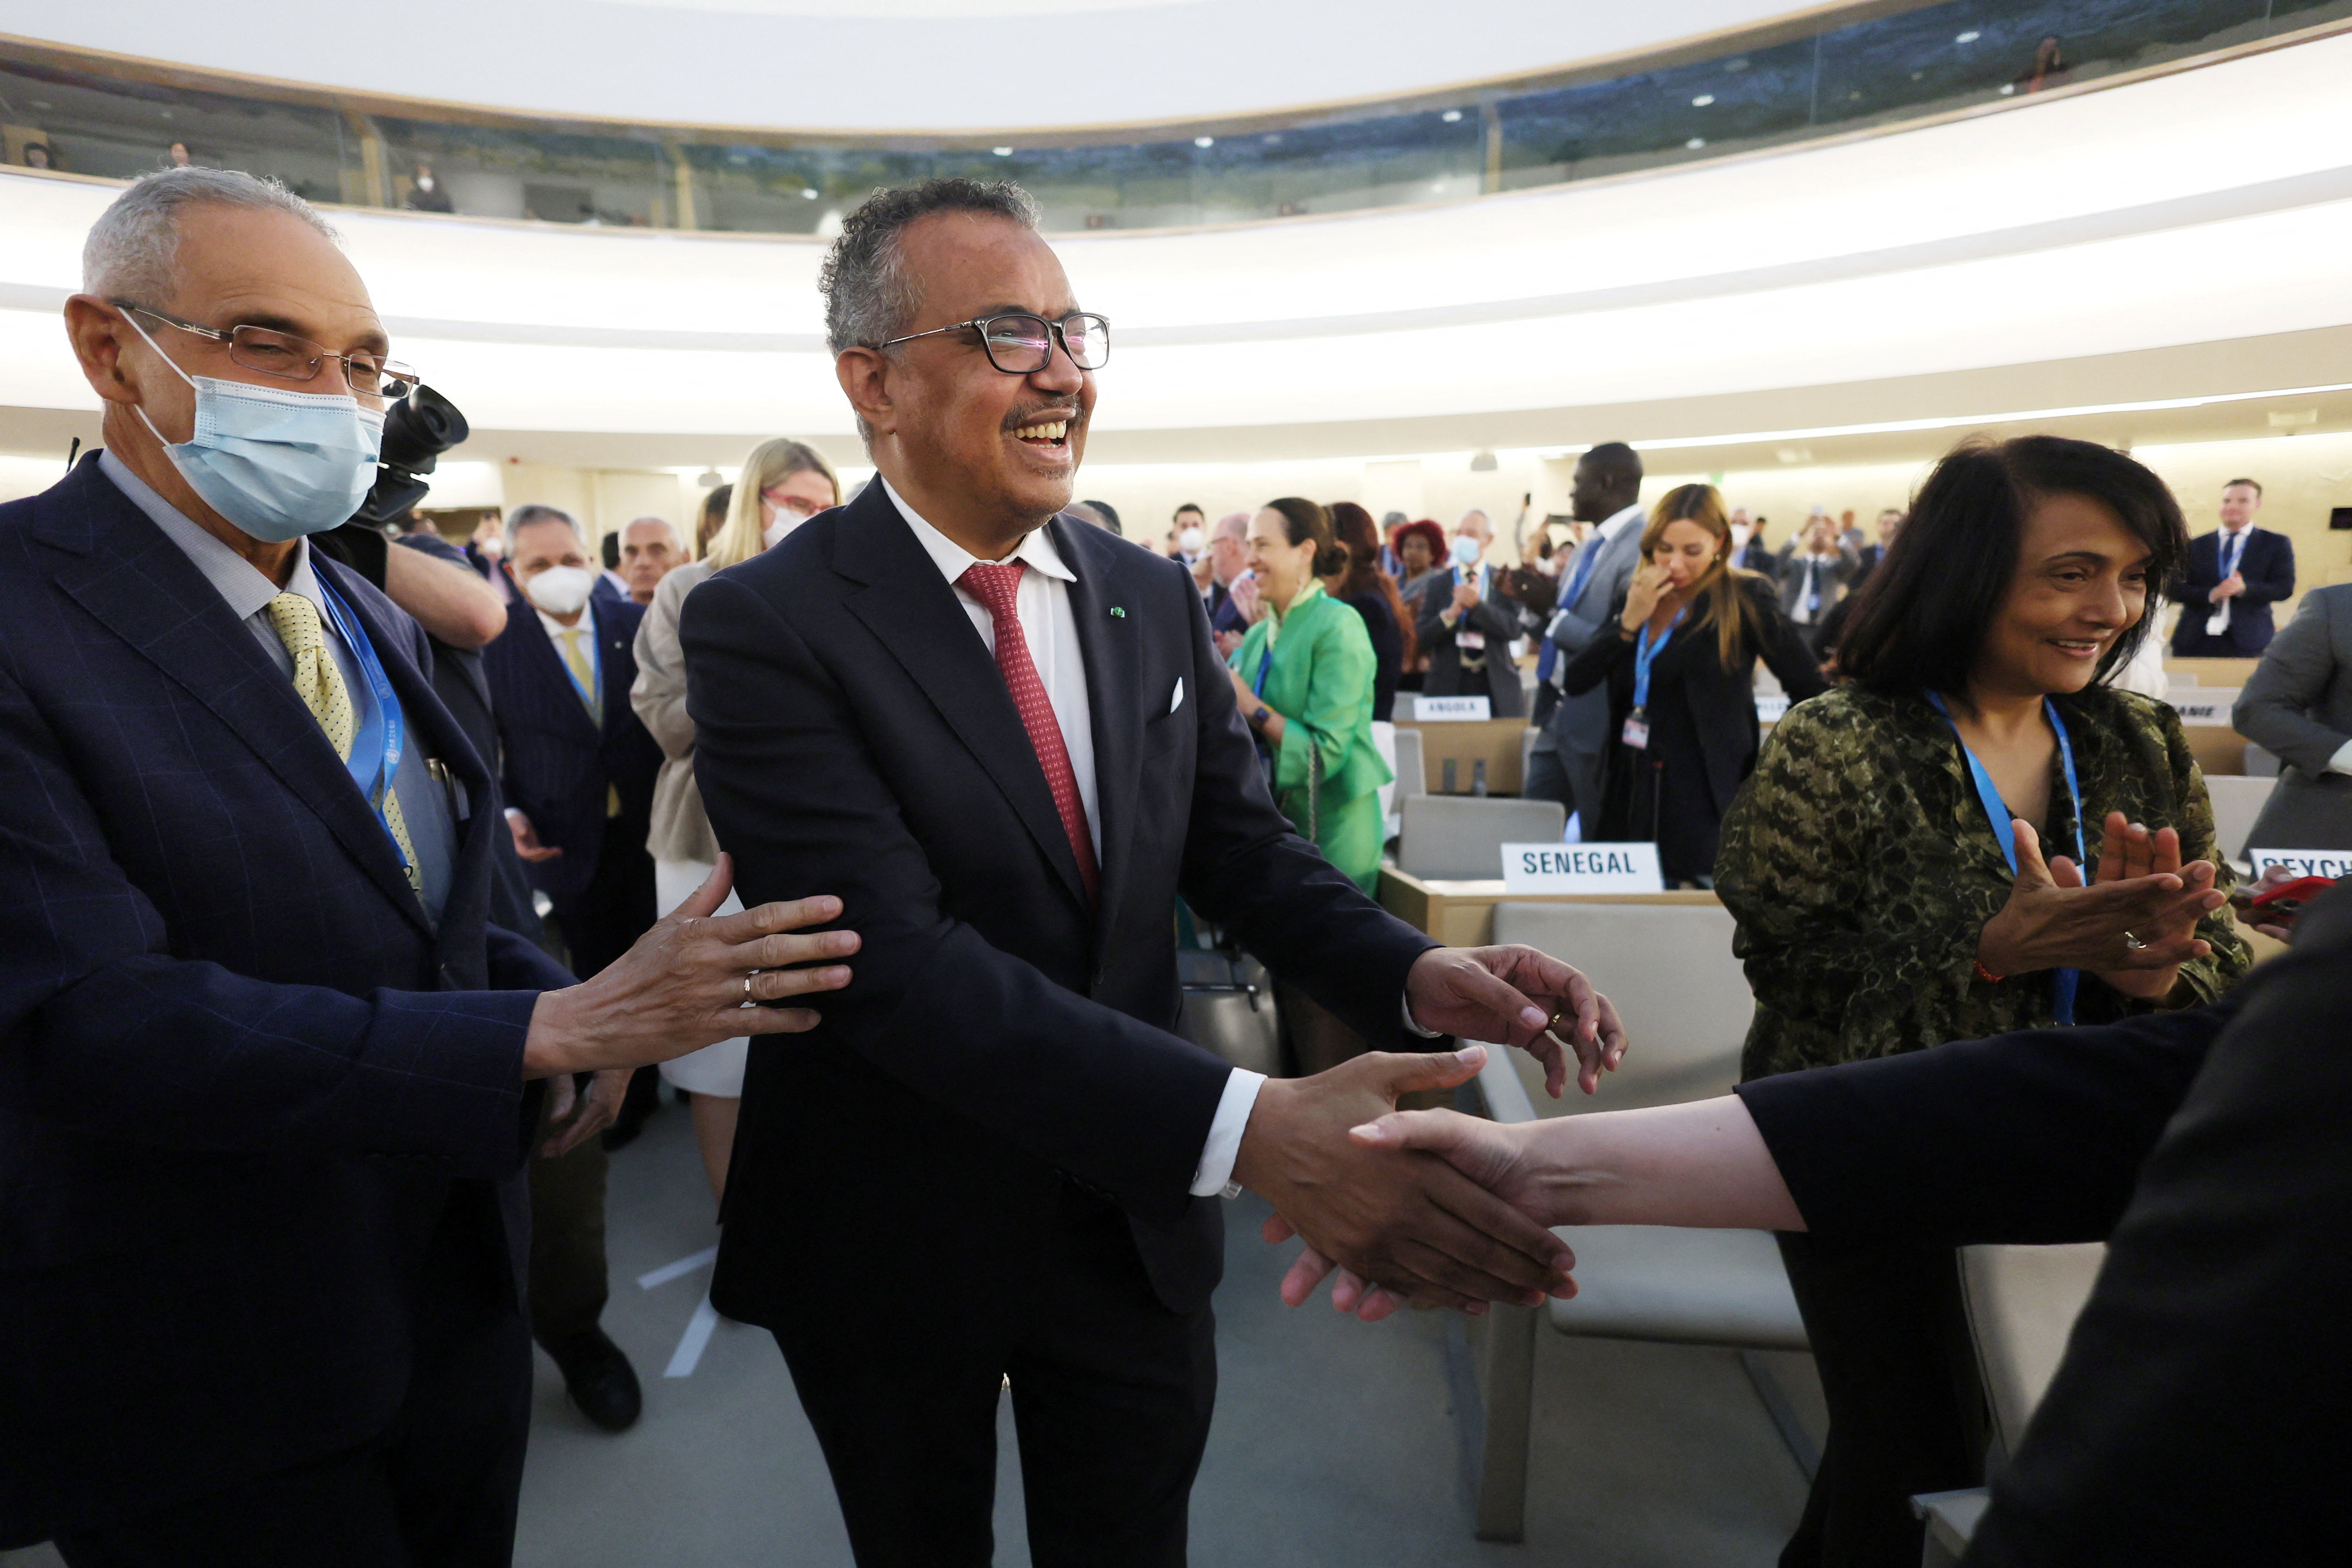 El Dr. Tedros Adhanom Ghebreyesus, Director General de la Organización Mundial de la Salud (OMS), celebra su reelección durante la 75.ª Asamblea Mundial de la Salud en las Naciones Unidas en Ginebra, Suiza, el 24 de mayo de 2022. REUTERS/Denis Balibouse